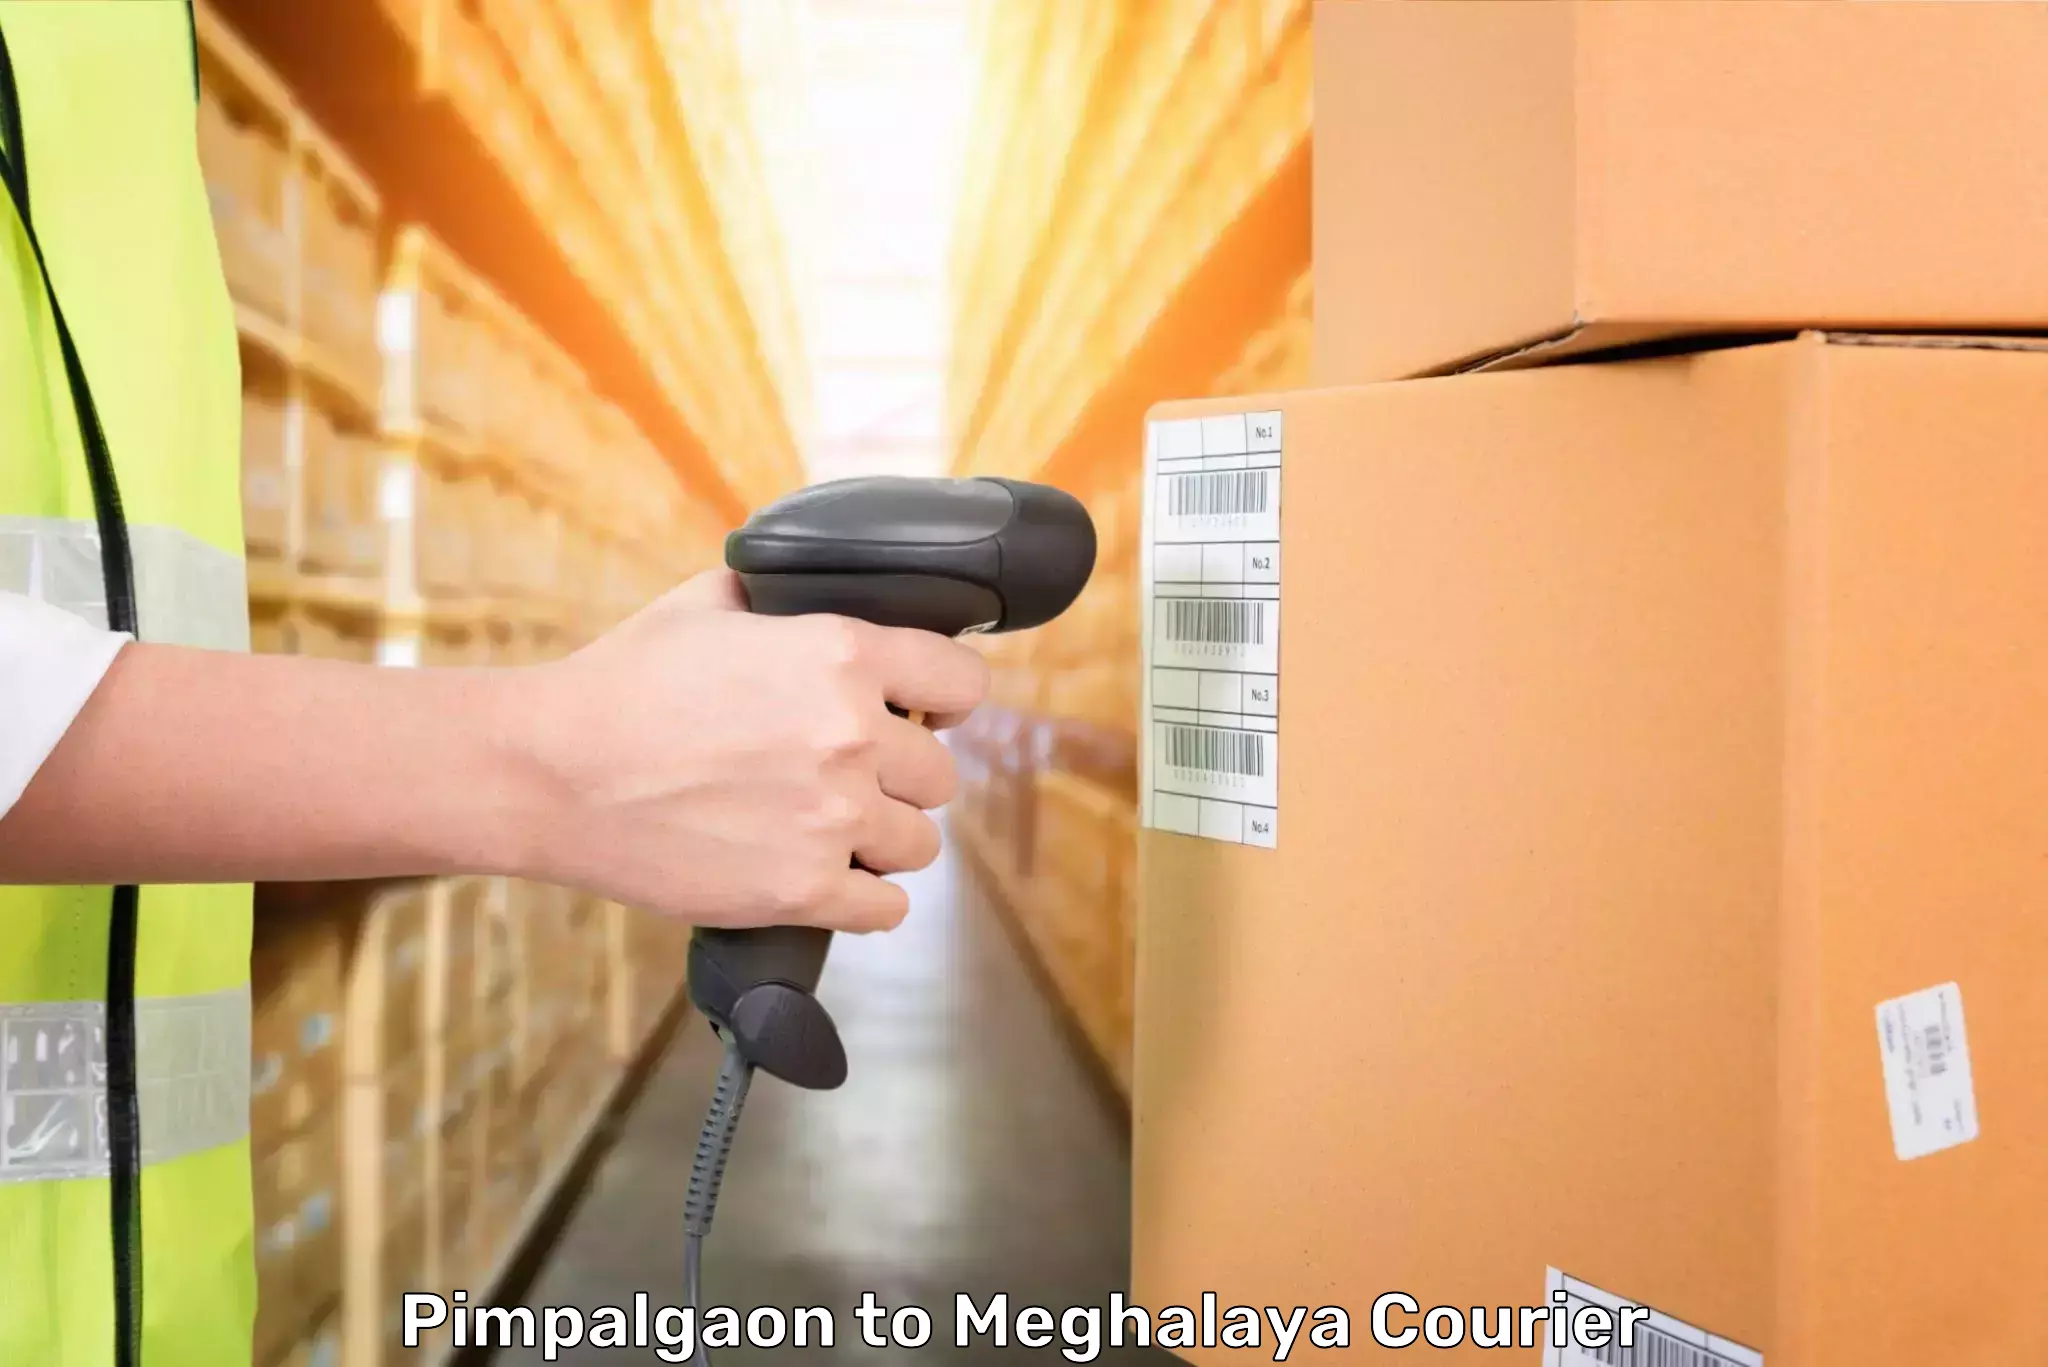 Luggage delivery network Pimpalgaon to Meghalaya